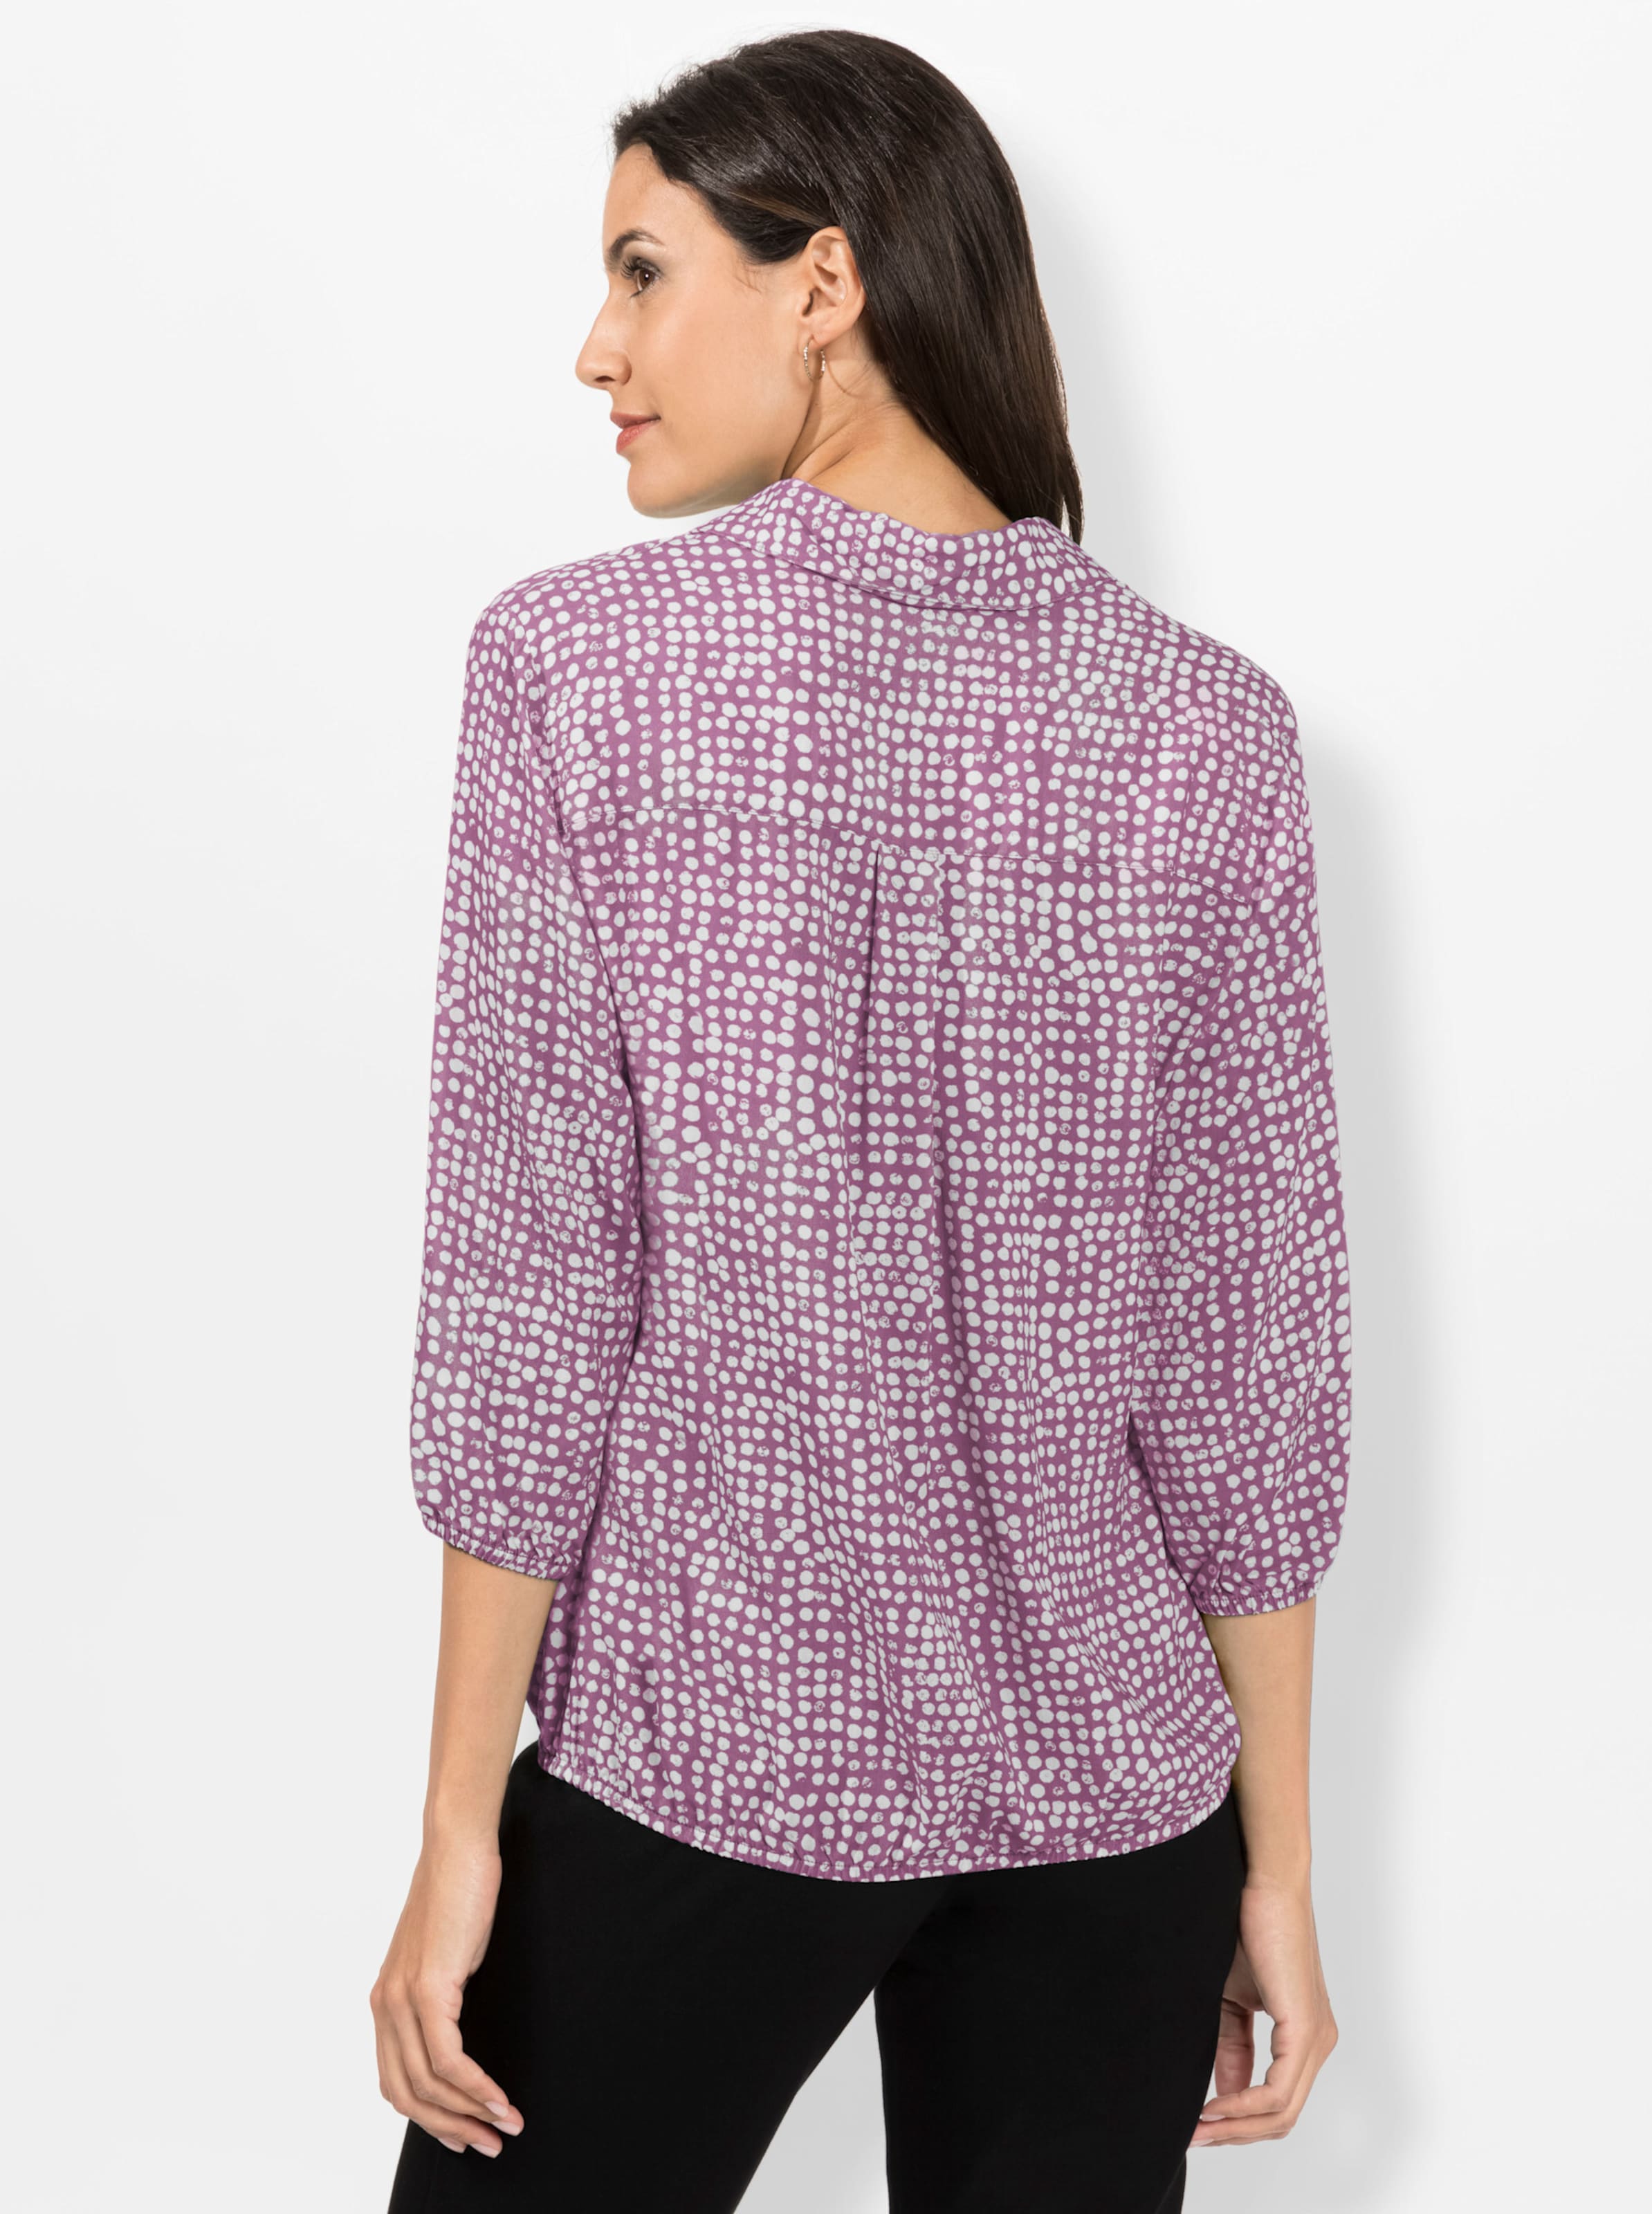 Bedruckt günstig Kaufen-Bluse in violett-weiß-bedruckt von heine. Bluse in violett-weiß-bedruckt von heine <![CDATA[Minimal-Muster sind ein Muss! Mit dieser allover bedruckten Bluse sind Sie immer schick angezogen. Mit offenem Hemdkragen und schimmernden Knöpfen an de